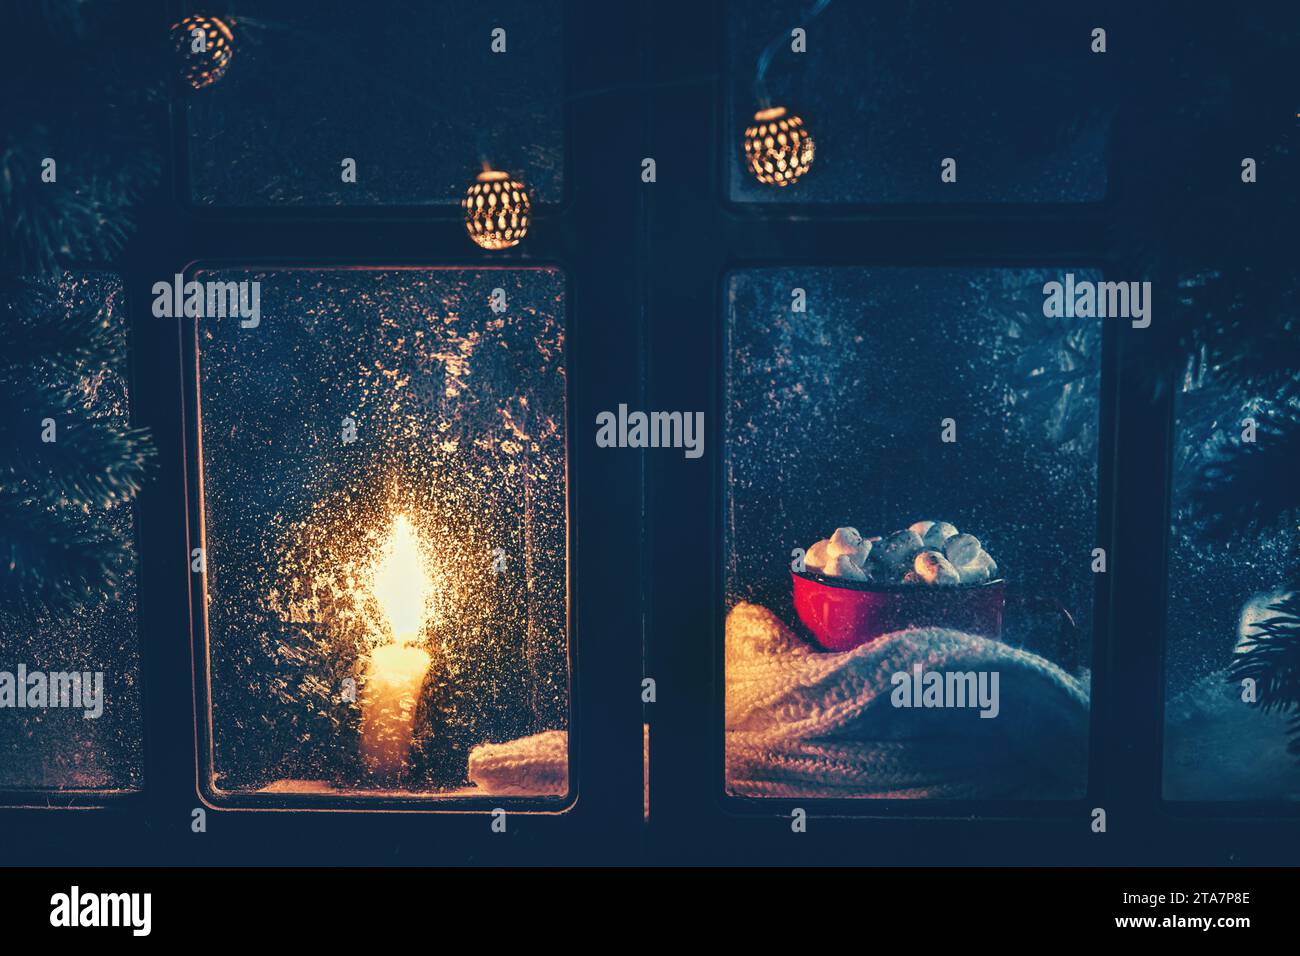 Weihnachten, Neujahr, Winterkomposition. Roter Becher mit Kakao und Marshmallows und Kerze hinter einem gefrorenen Fenster mit frostigen Mustern Stockfoto